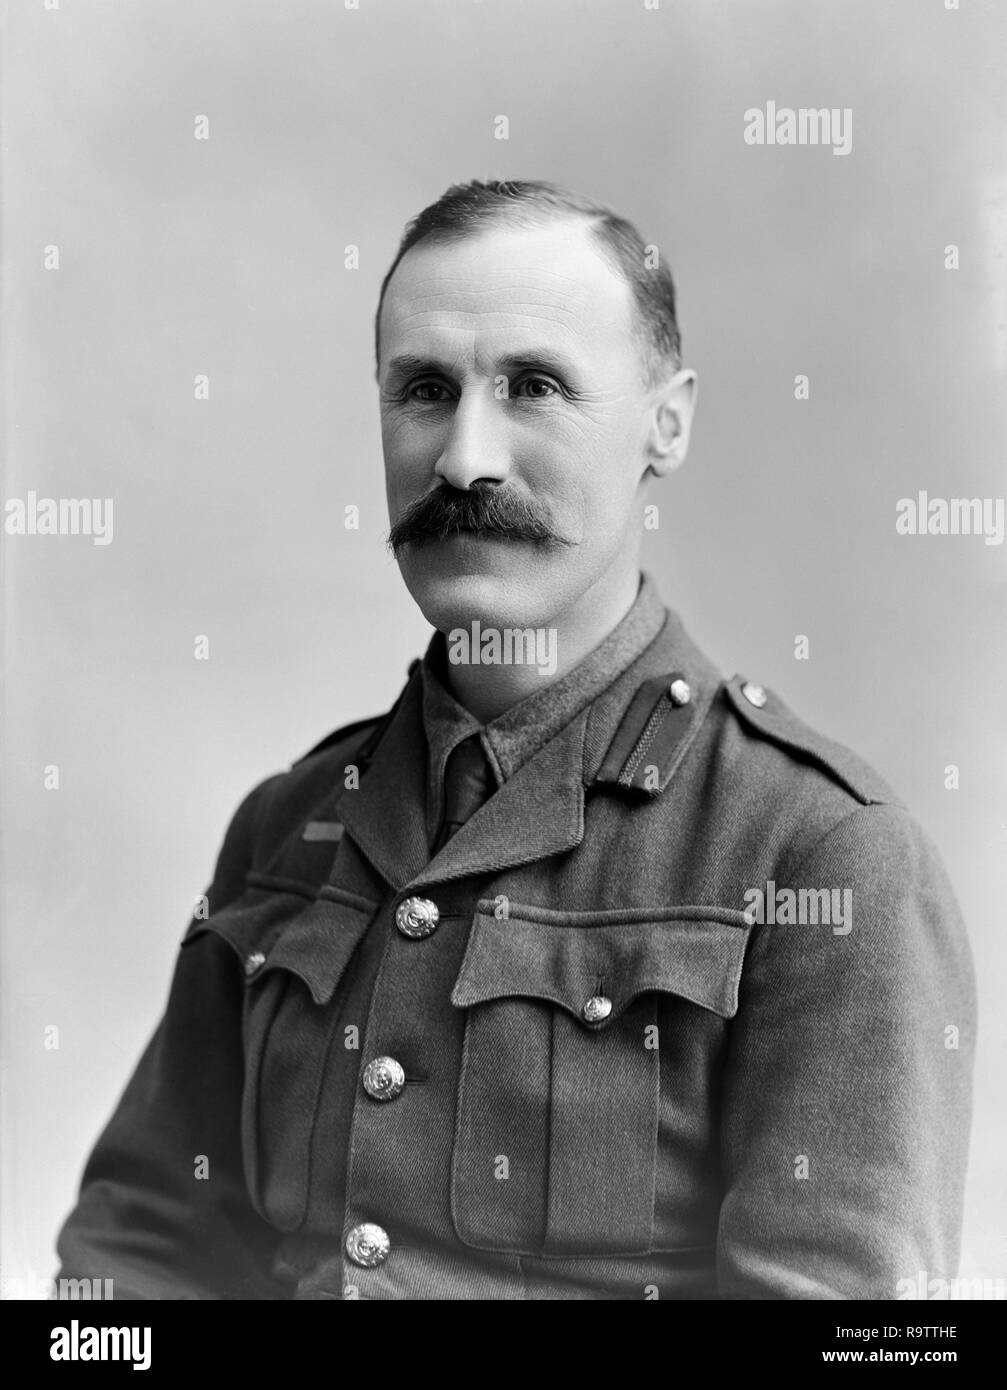 Il tenente colonnello Harry Douglas Farquharson dei Royal Marines fanteria leggera, un reggimento dell'Esercito britannico. Fotografia scattata il 16 marzo 1915 presso il famoso London studi fotografici di Bassano. Foto Stock